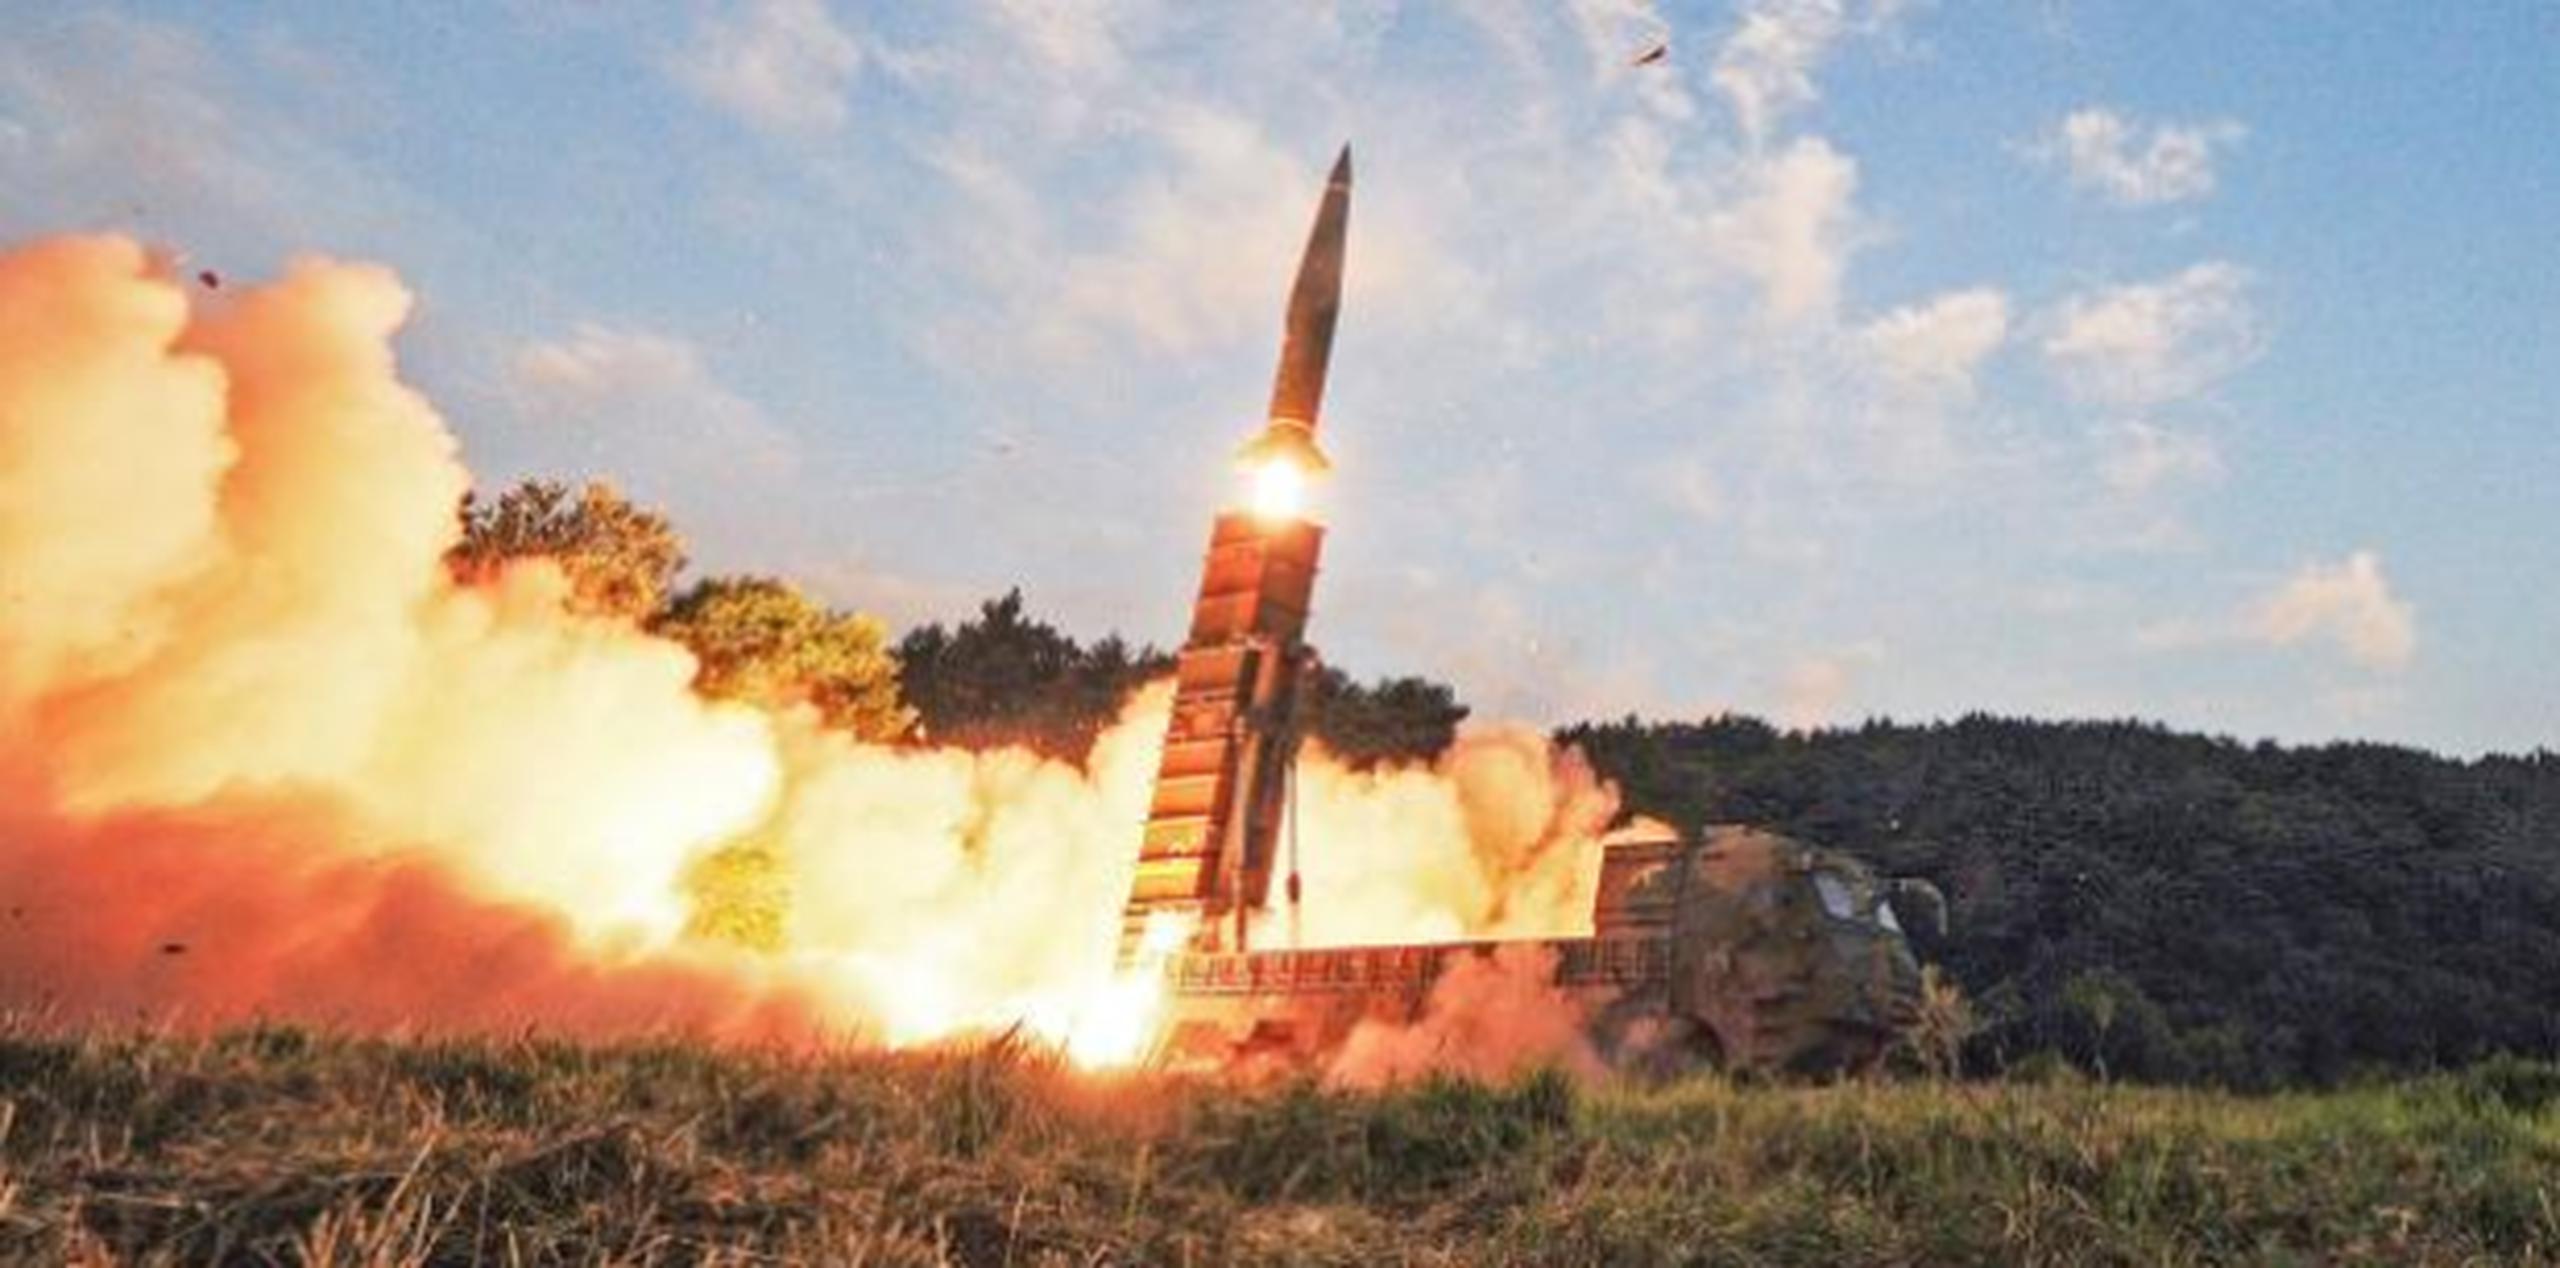 Habían indicios de que el régimen de Kim Jong-un estaba planificando un lanzamiento en los últimos días. (Archivo)